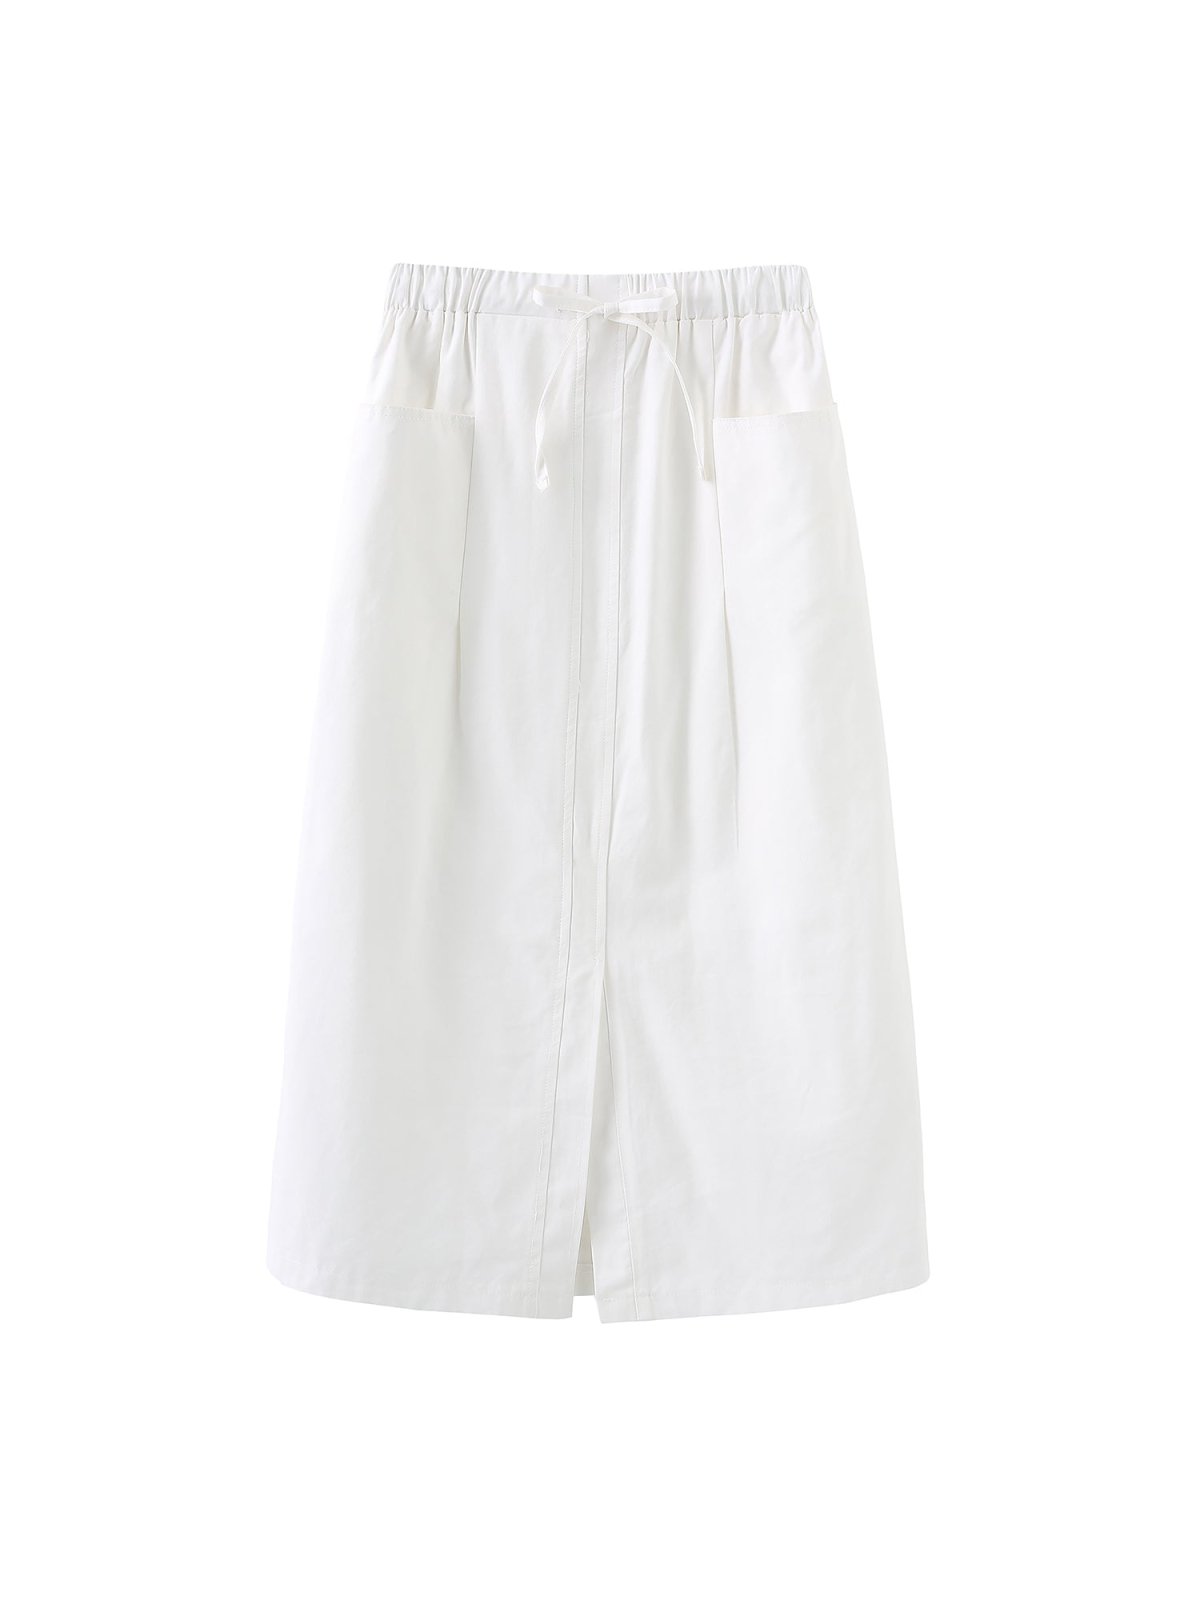 Larese Elastic Waist Slit Front Skirt - DAG-8-9859-22MarshmallowWhiteF - Marshmallow White - F - D'zage Designs